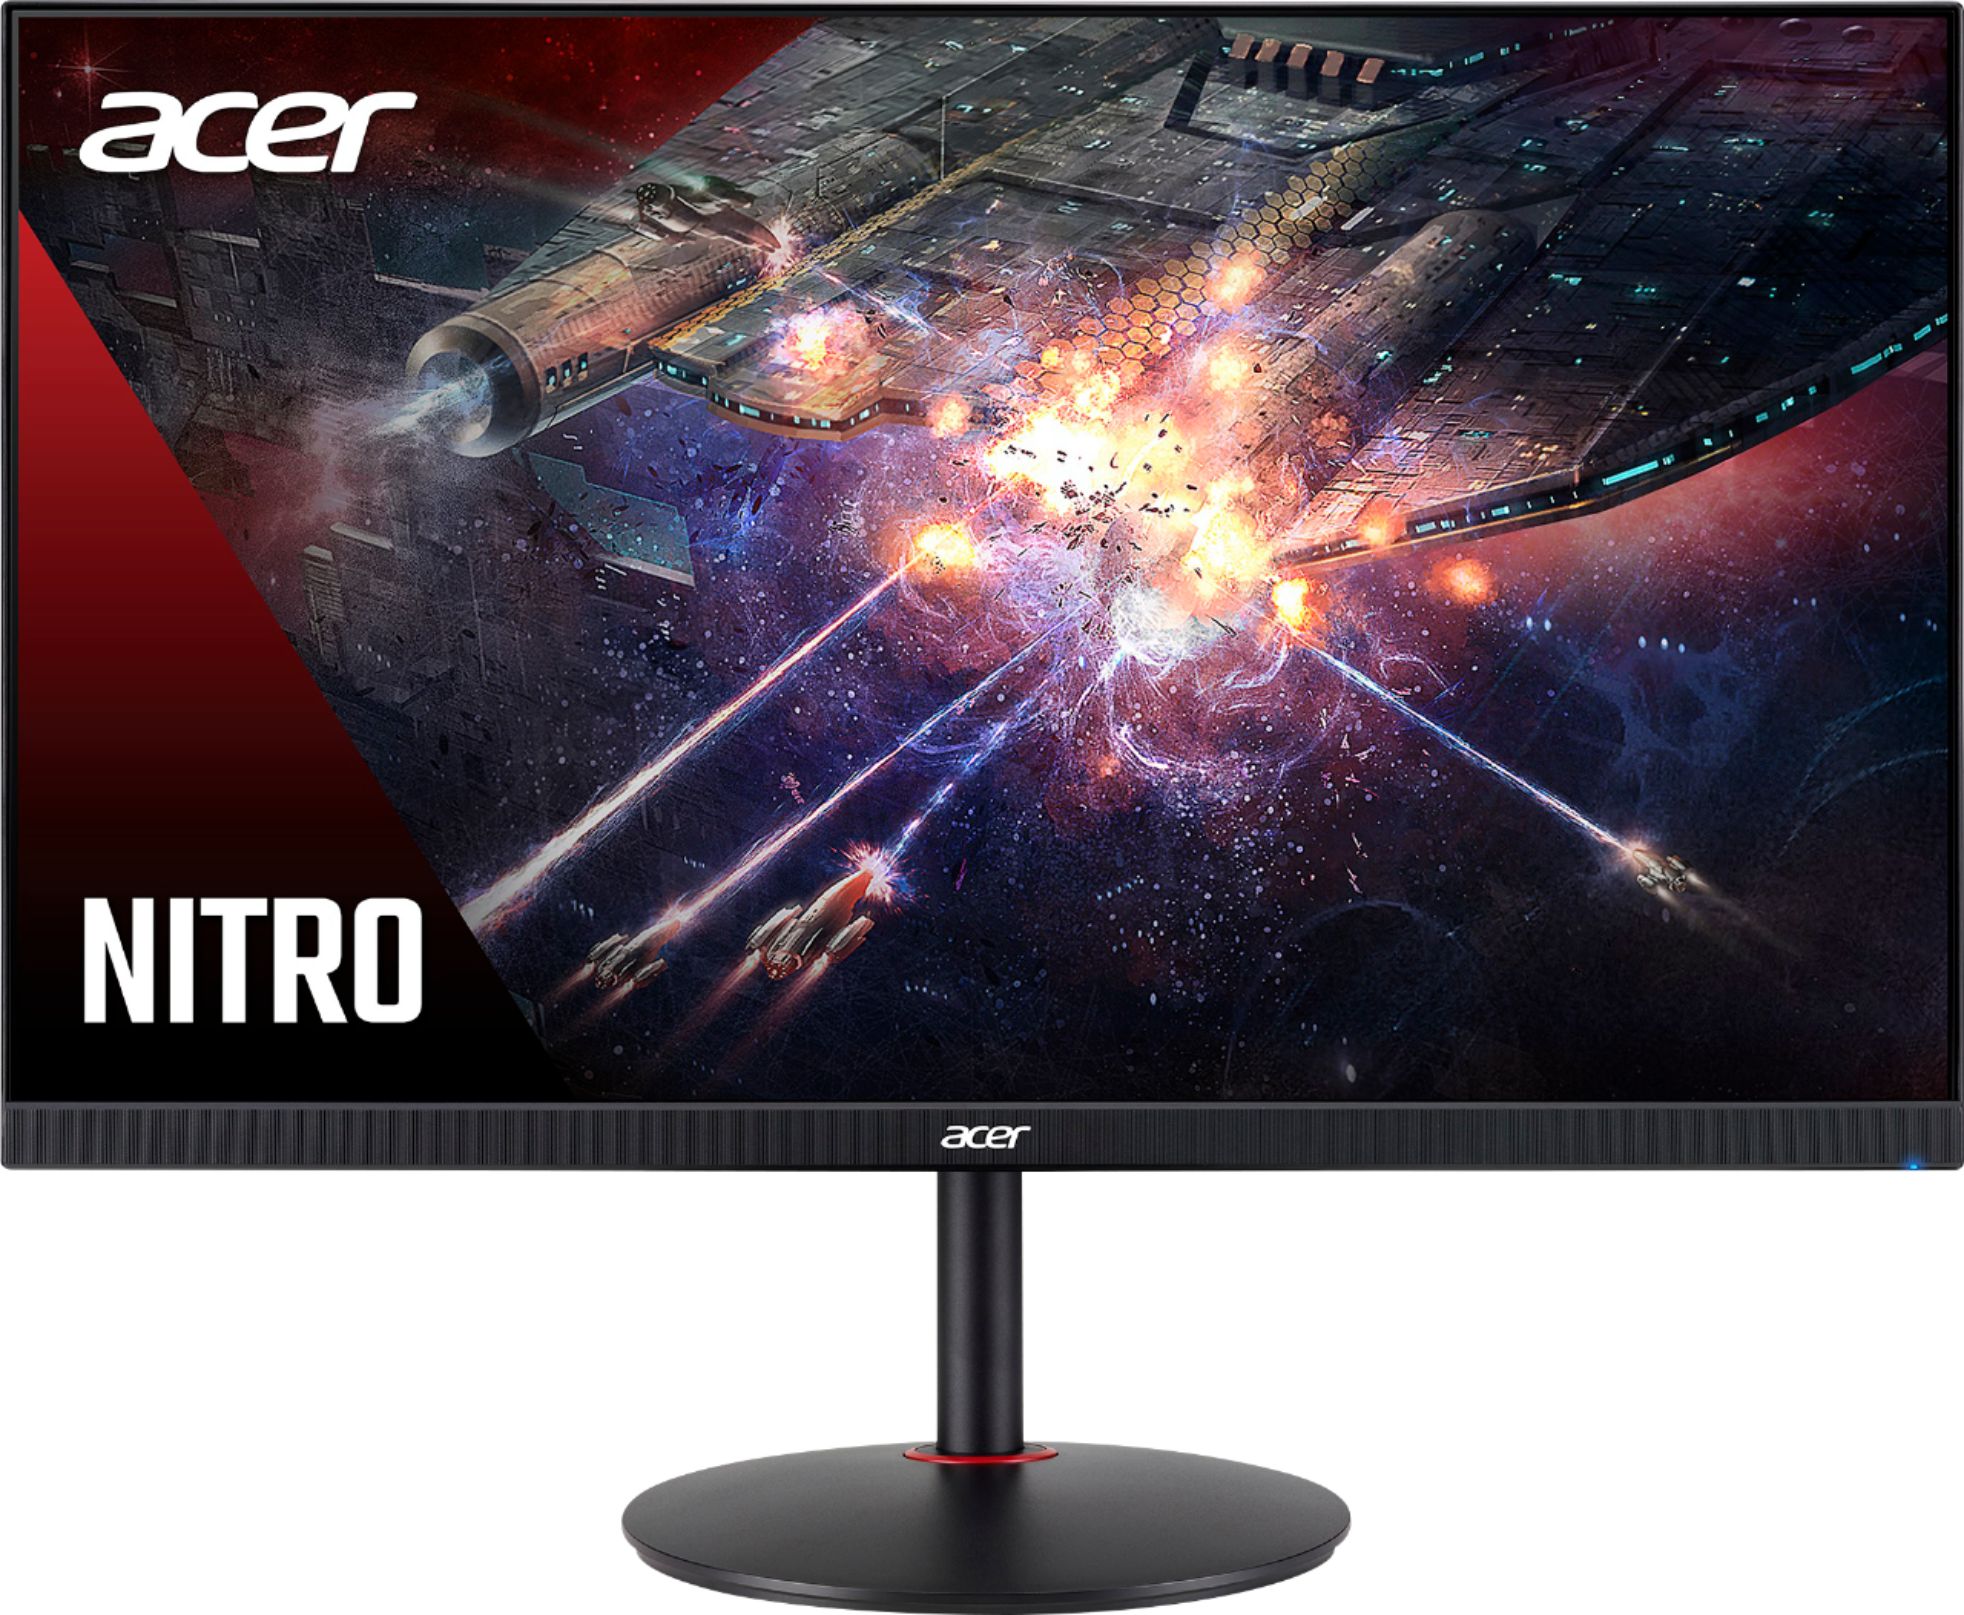 Acer - Nitro 27" IPS LED FHD FreeSync Monitor - Black